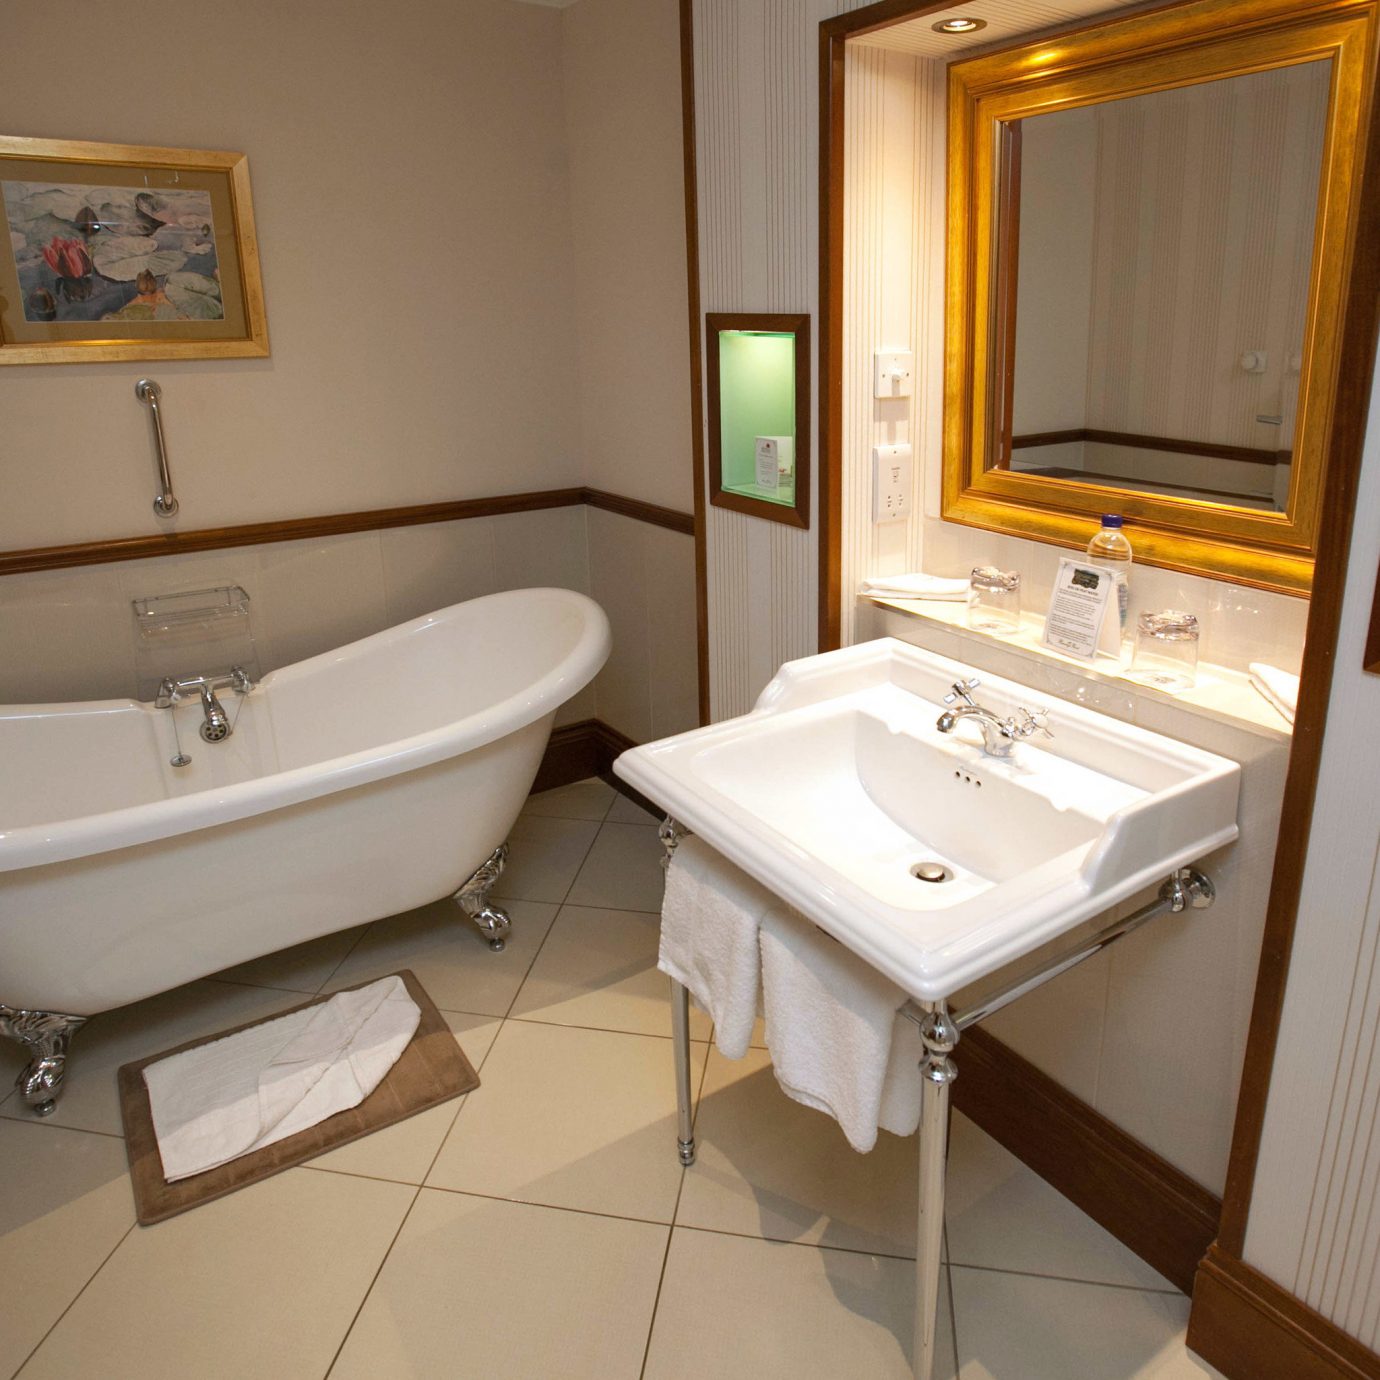 bathroom sink property Suite home cottage tiled tan